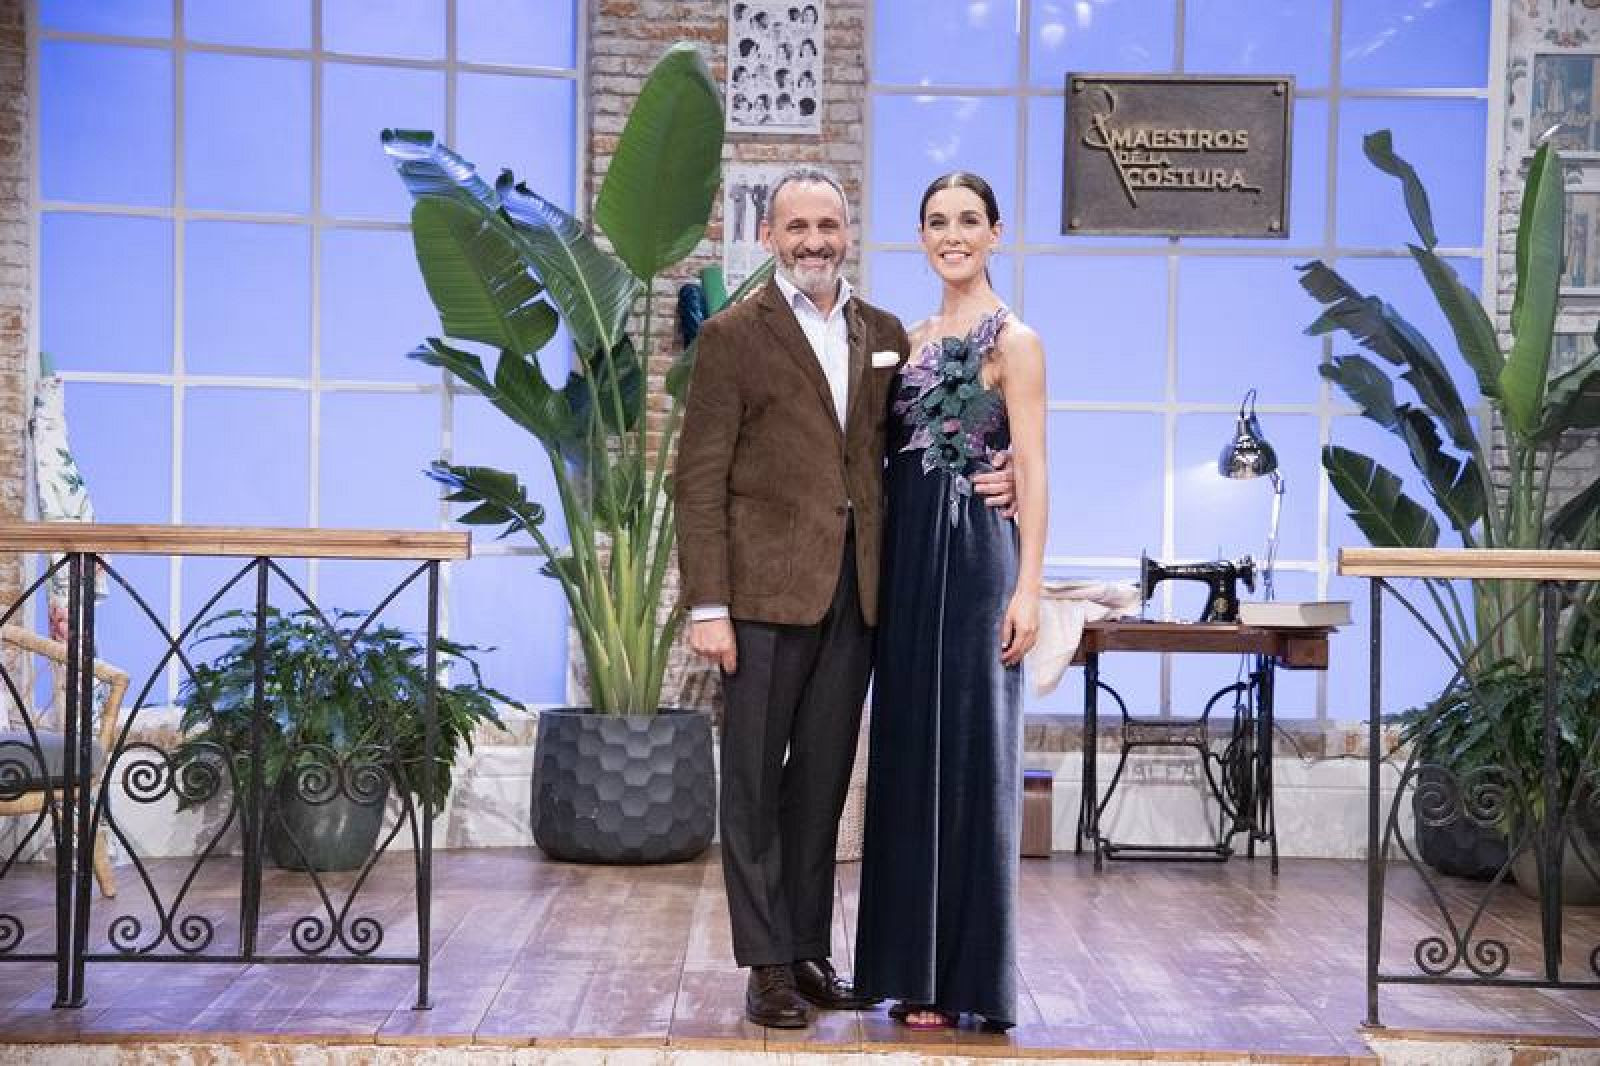  El diseñador Marcos Luengo con Raquel Sánchez Silva, presentadora de 'Maestros de la Costura'